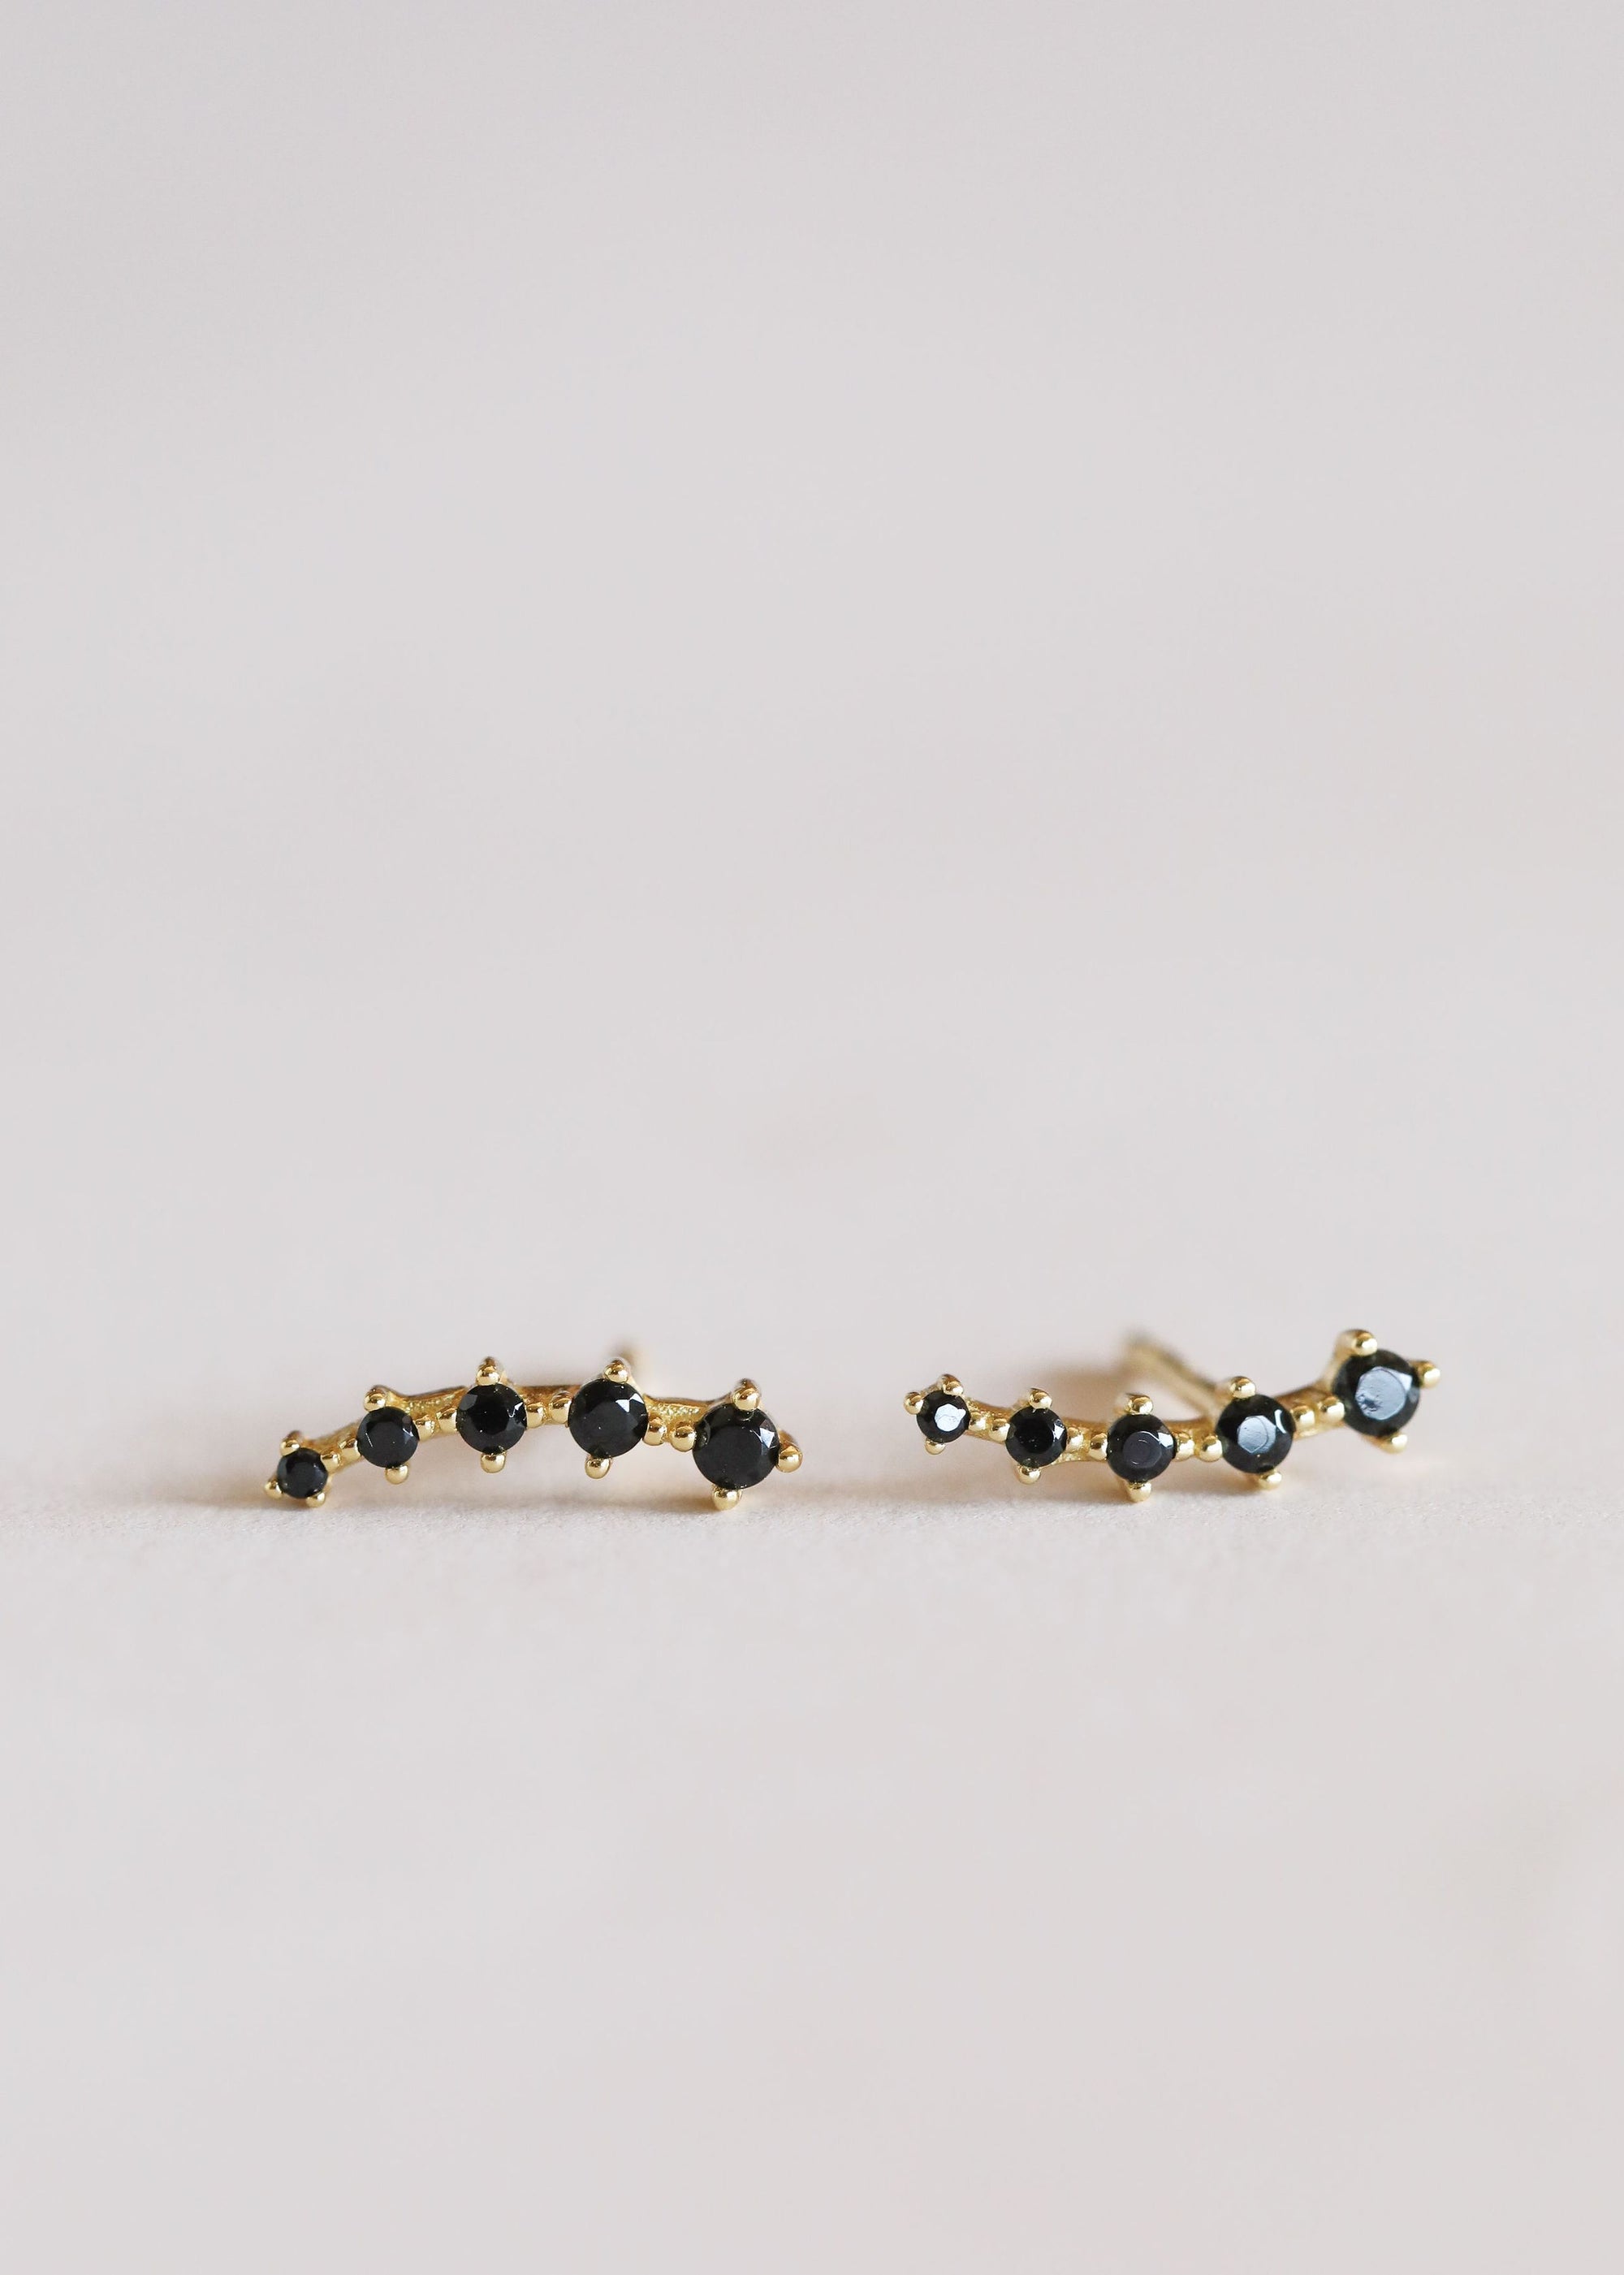 Crawler Earrings by JaxKelly